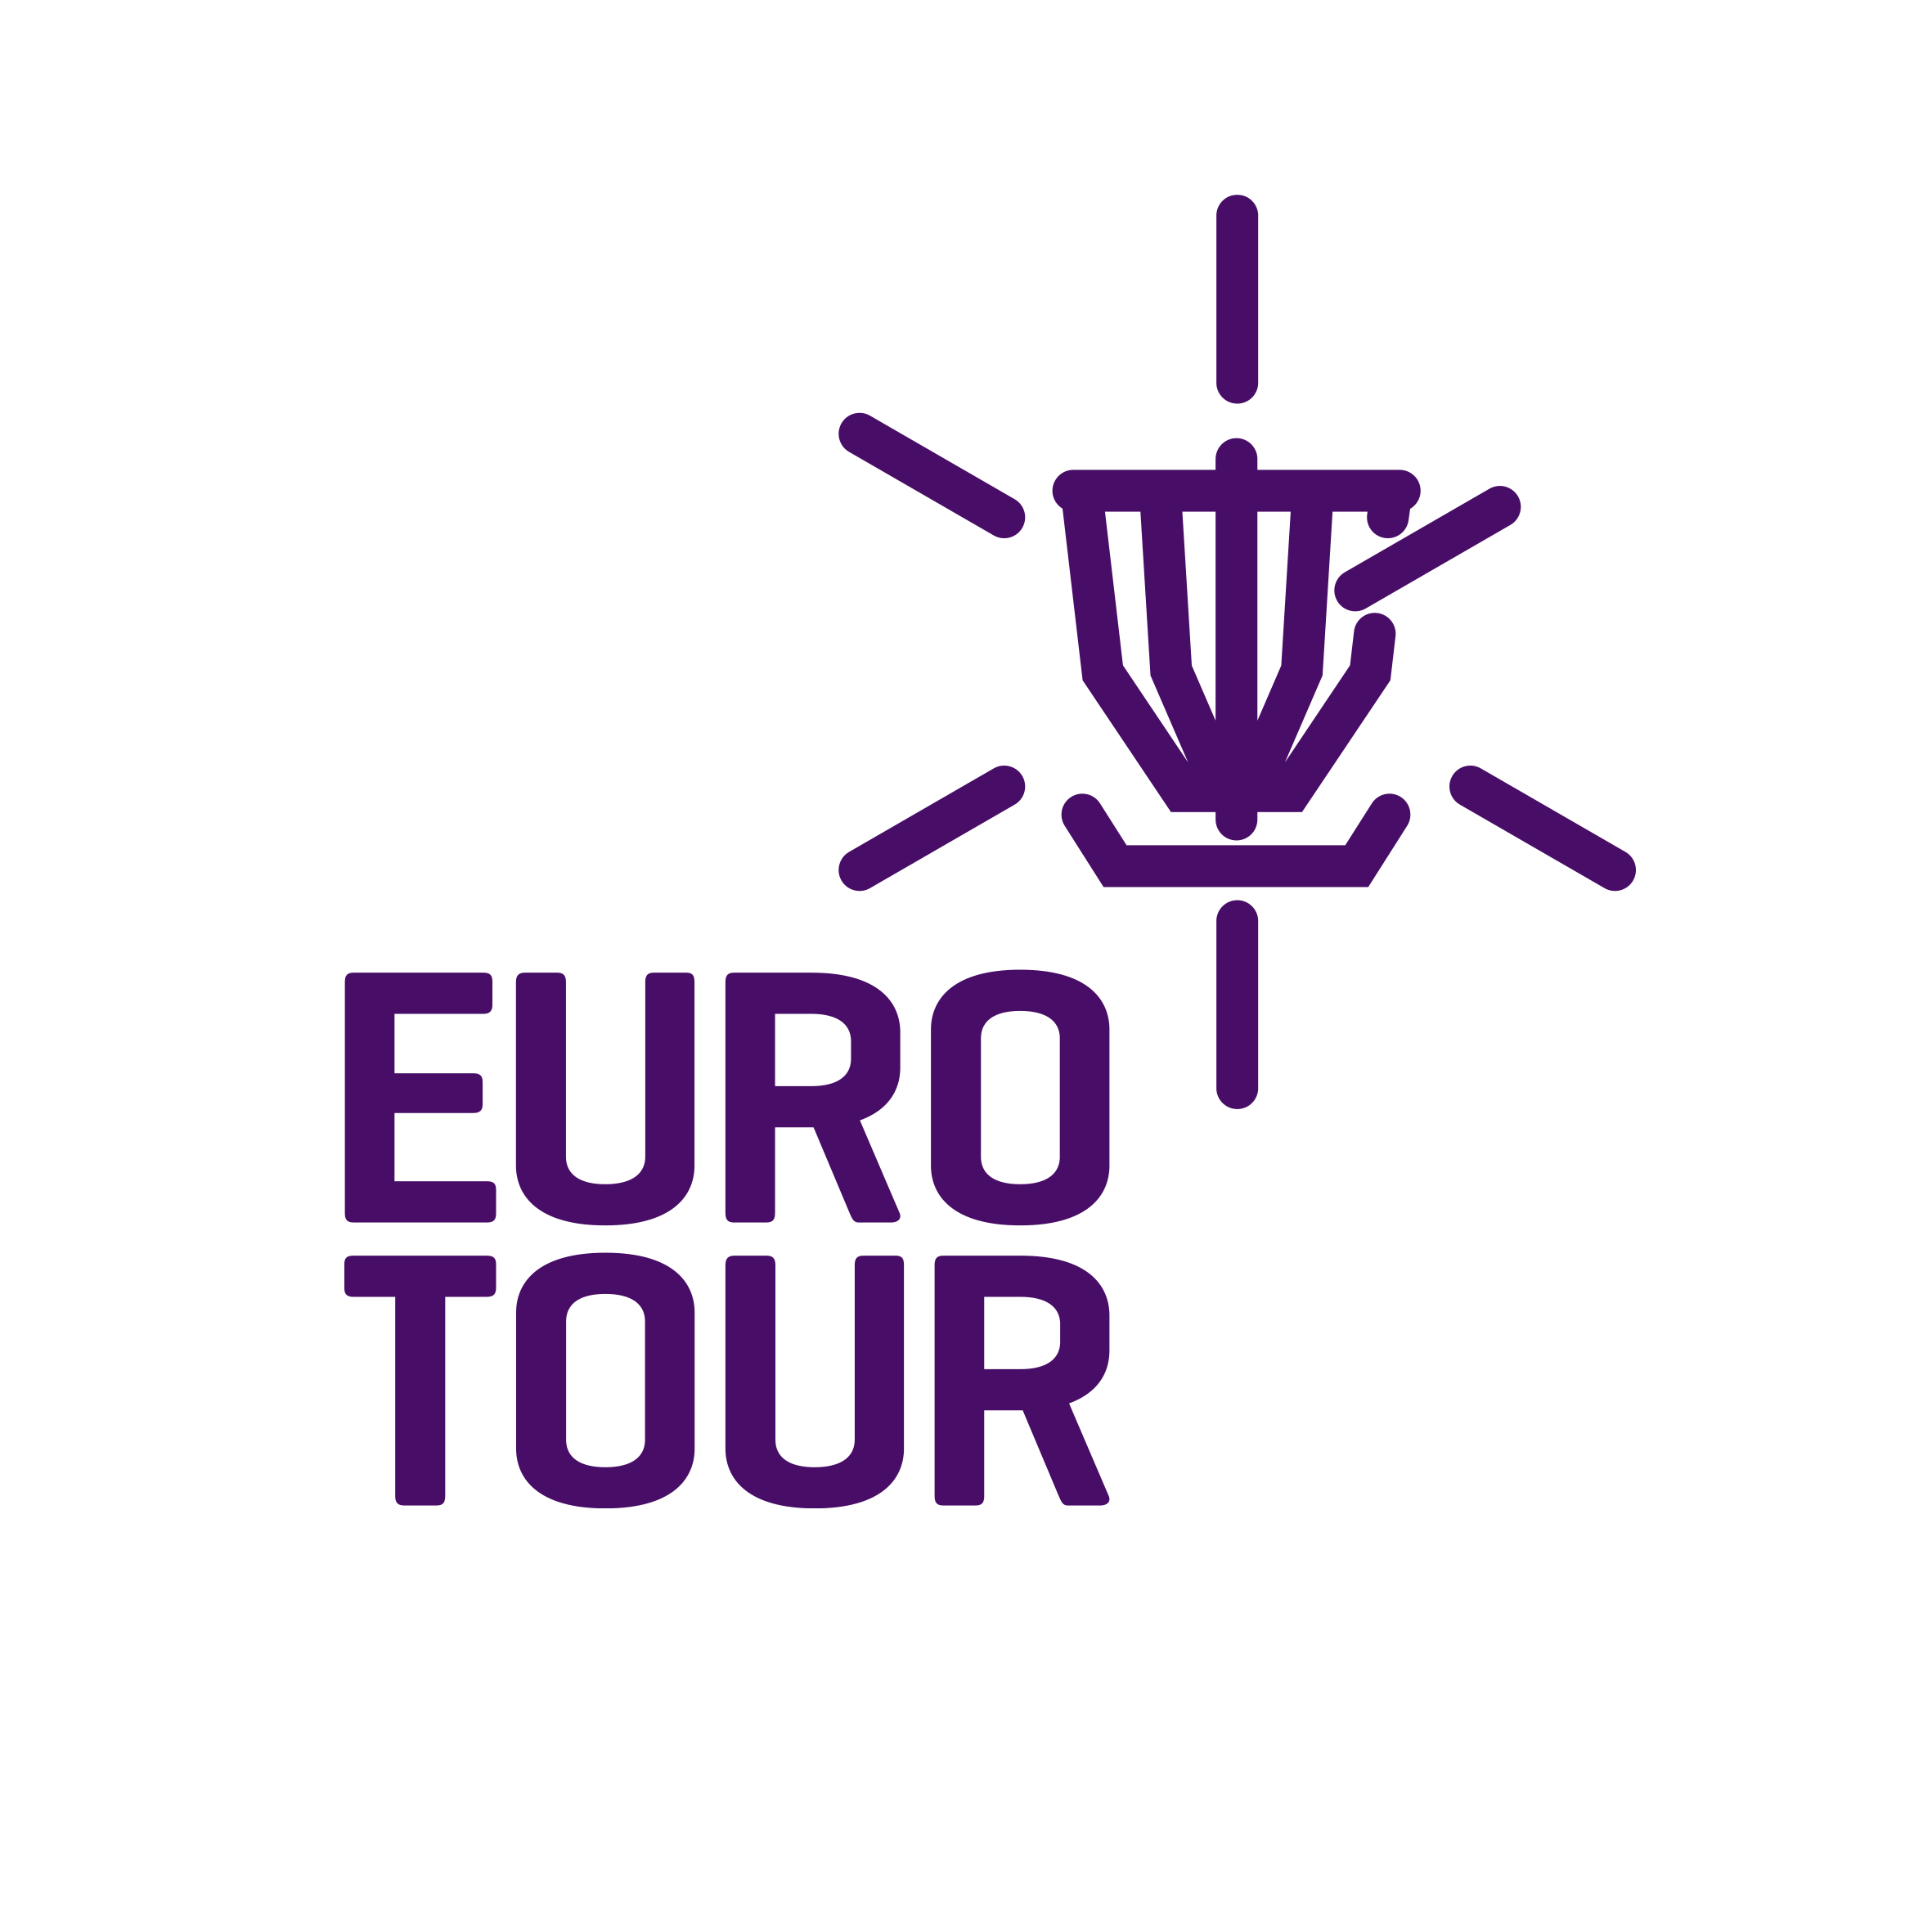 PDGA Euro Tour